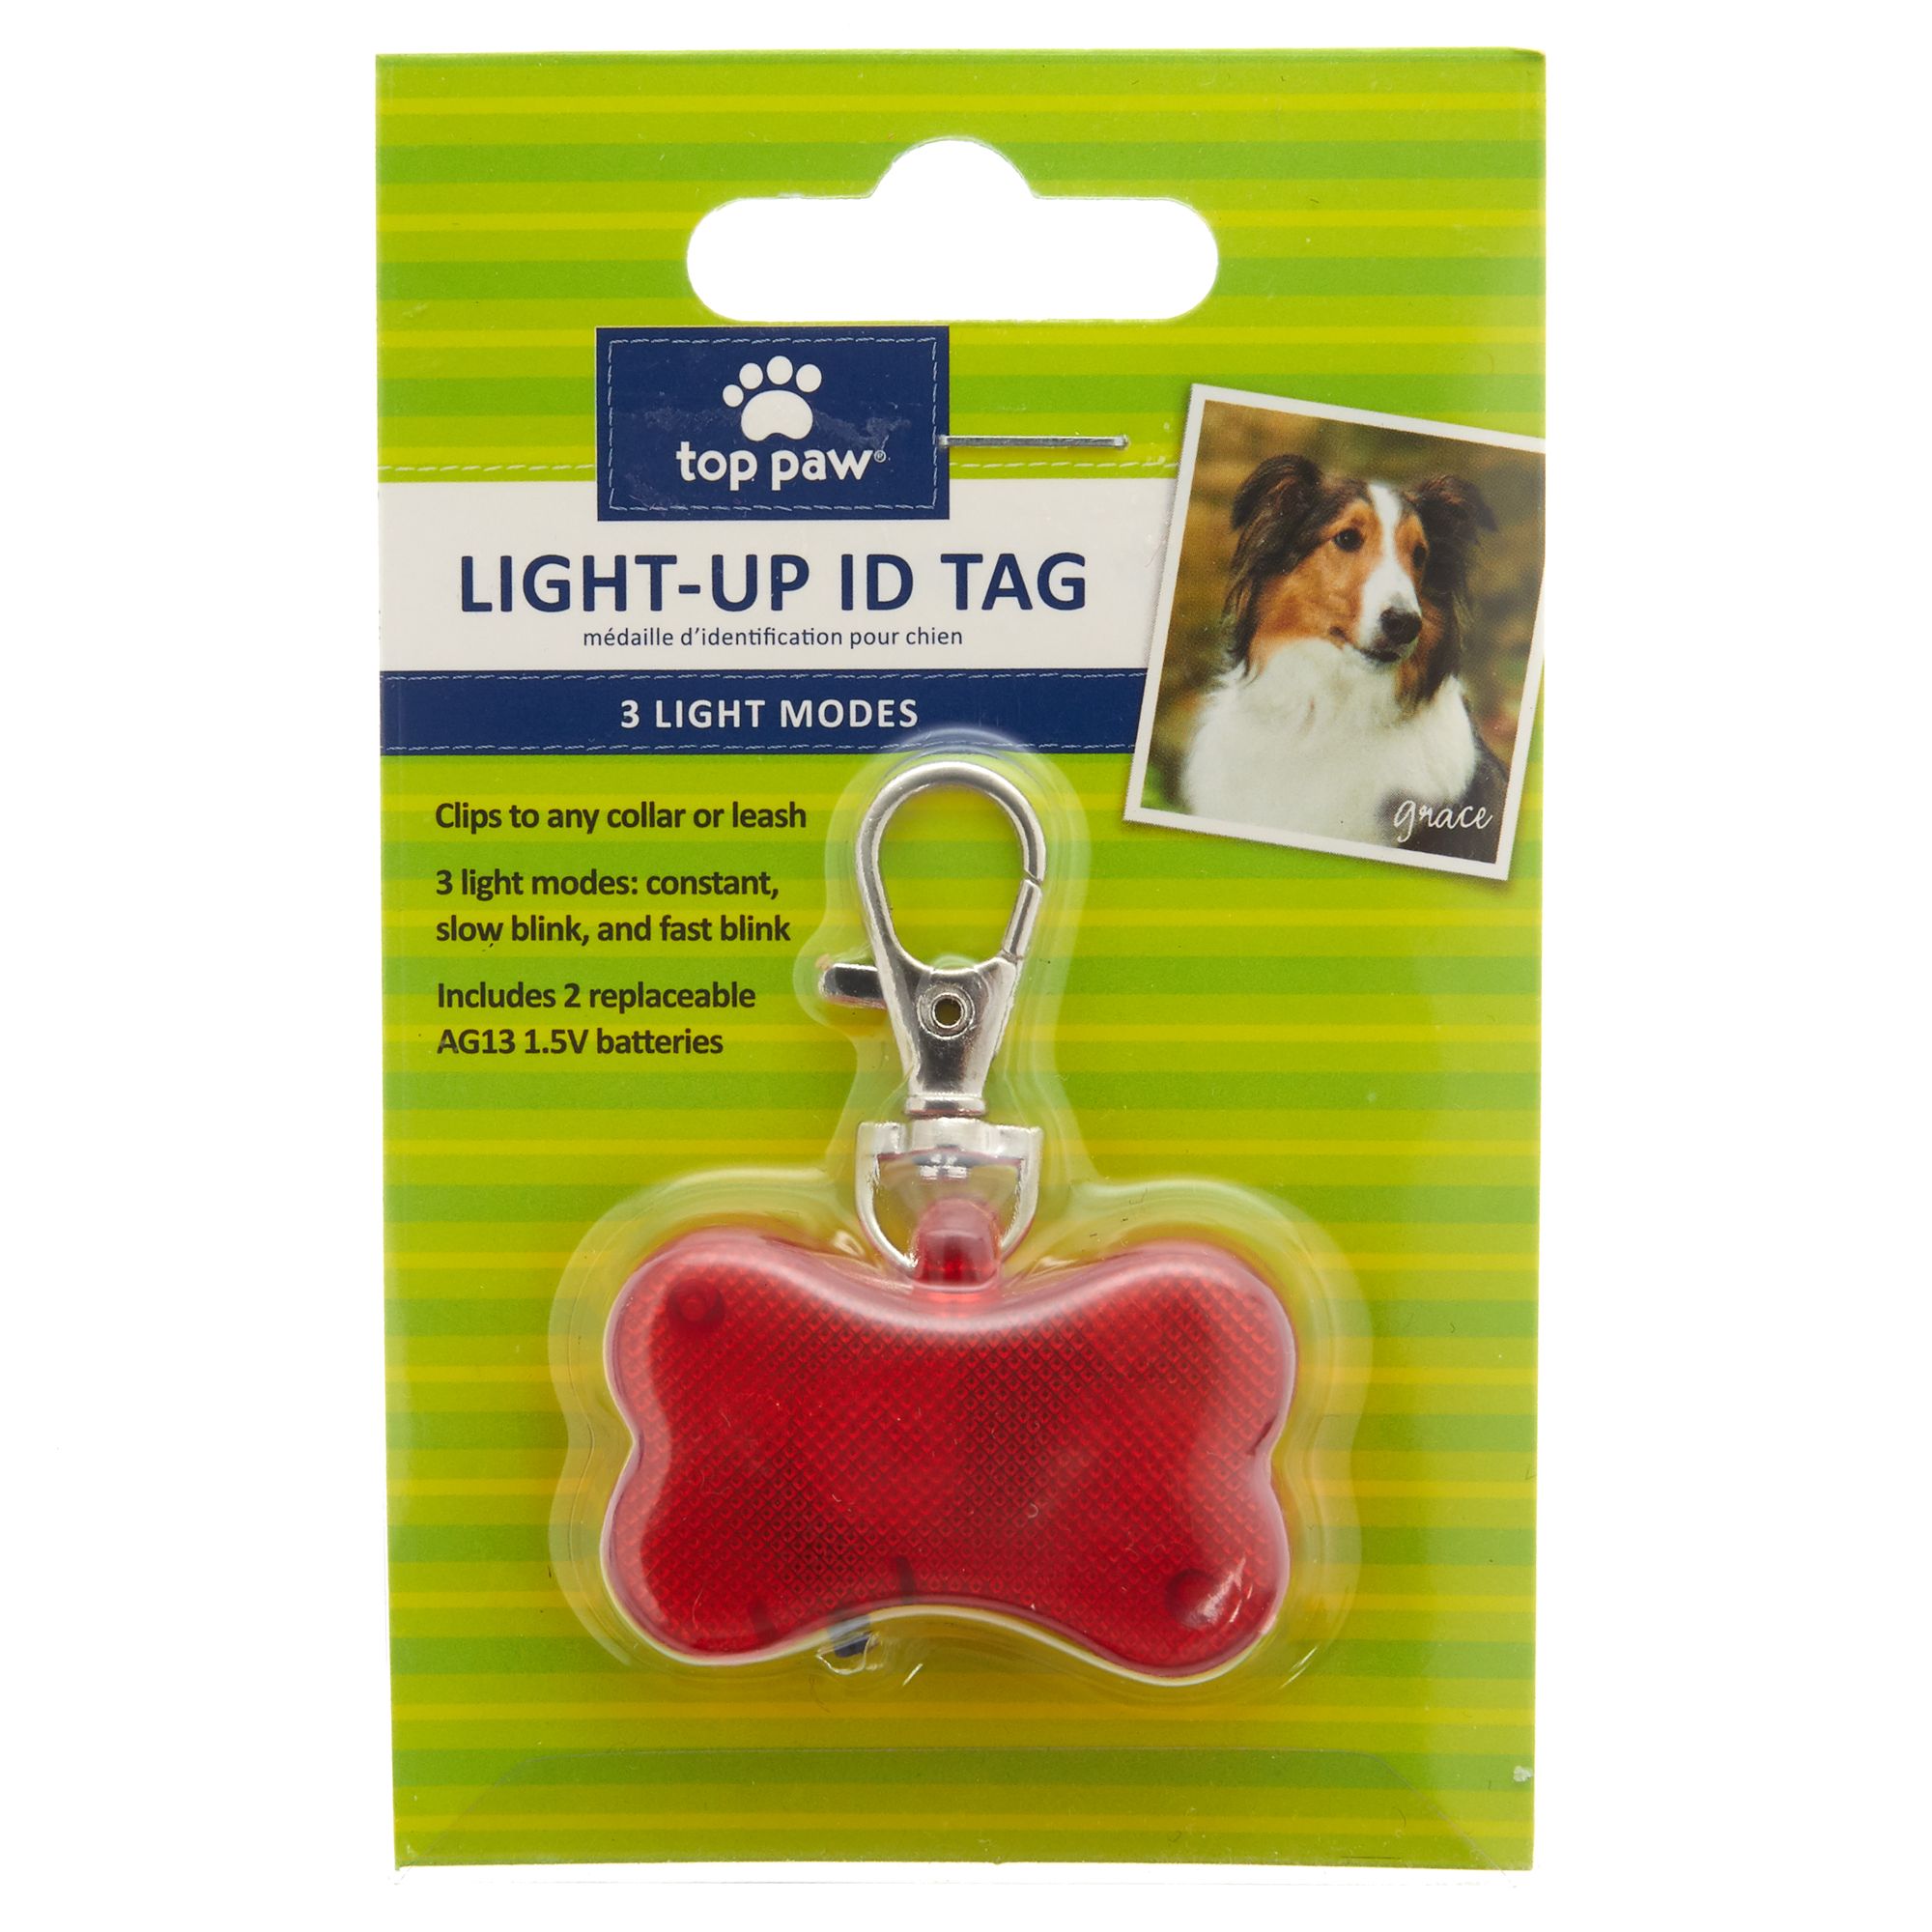 flashing dog tag